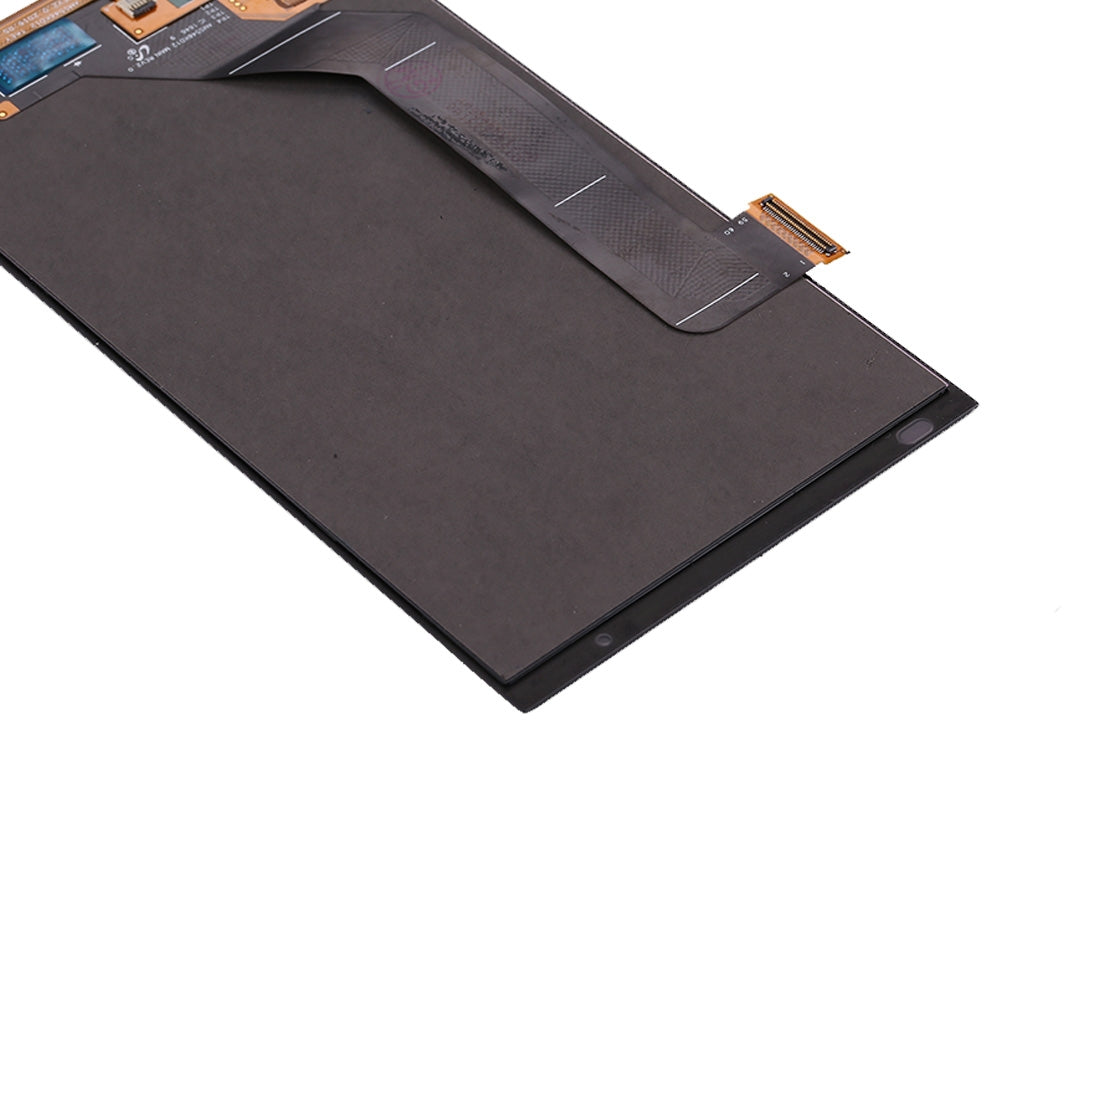 Pantalla LCD + Tactil Digitalizador ZTE Axon 7 A2017 + Táctil Negro